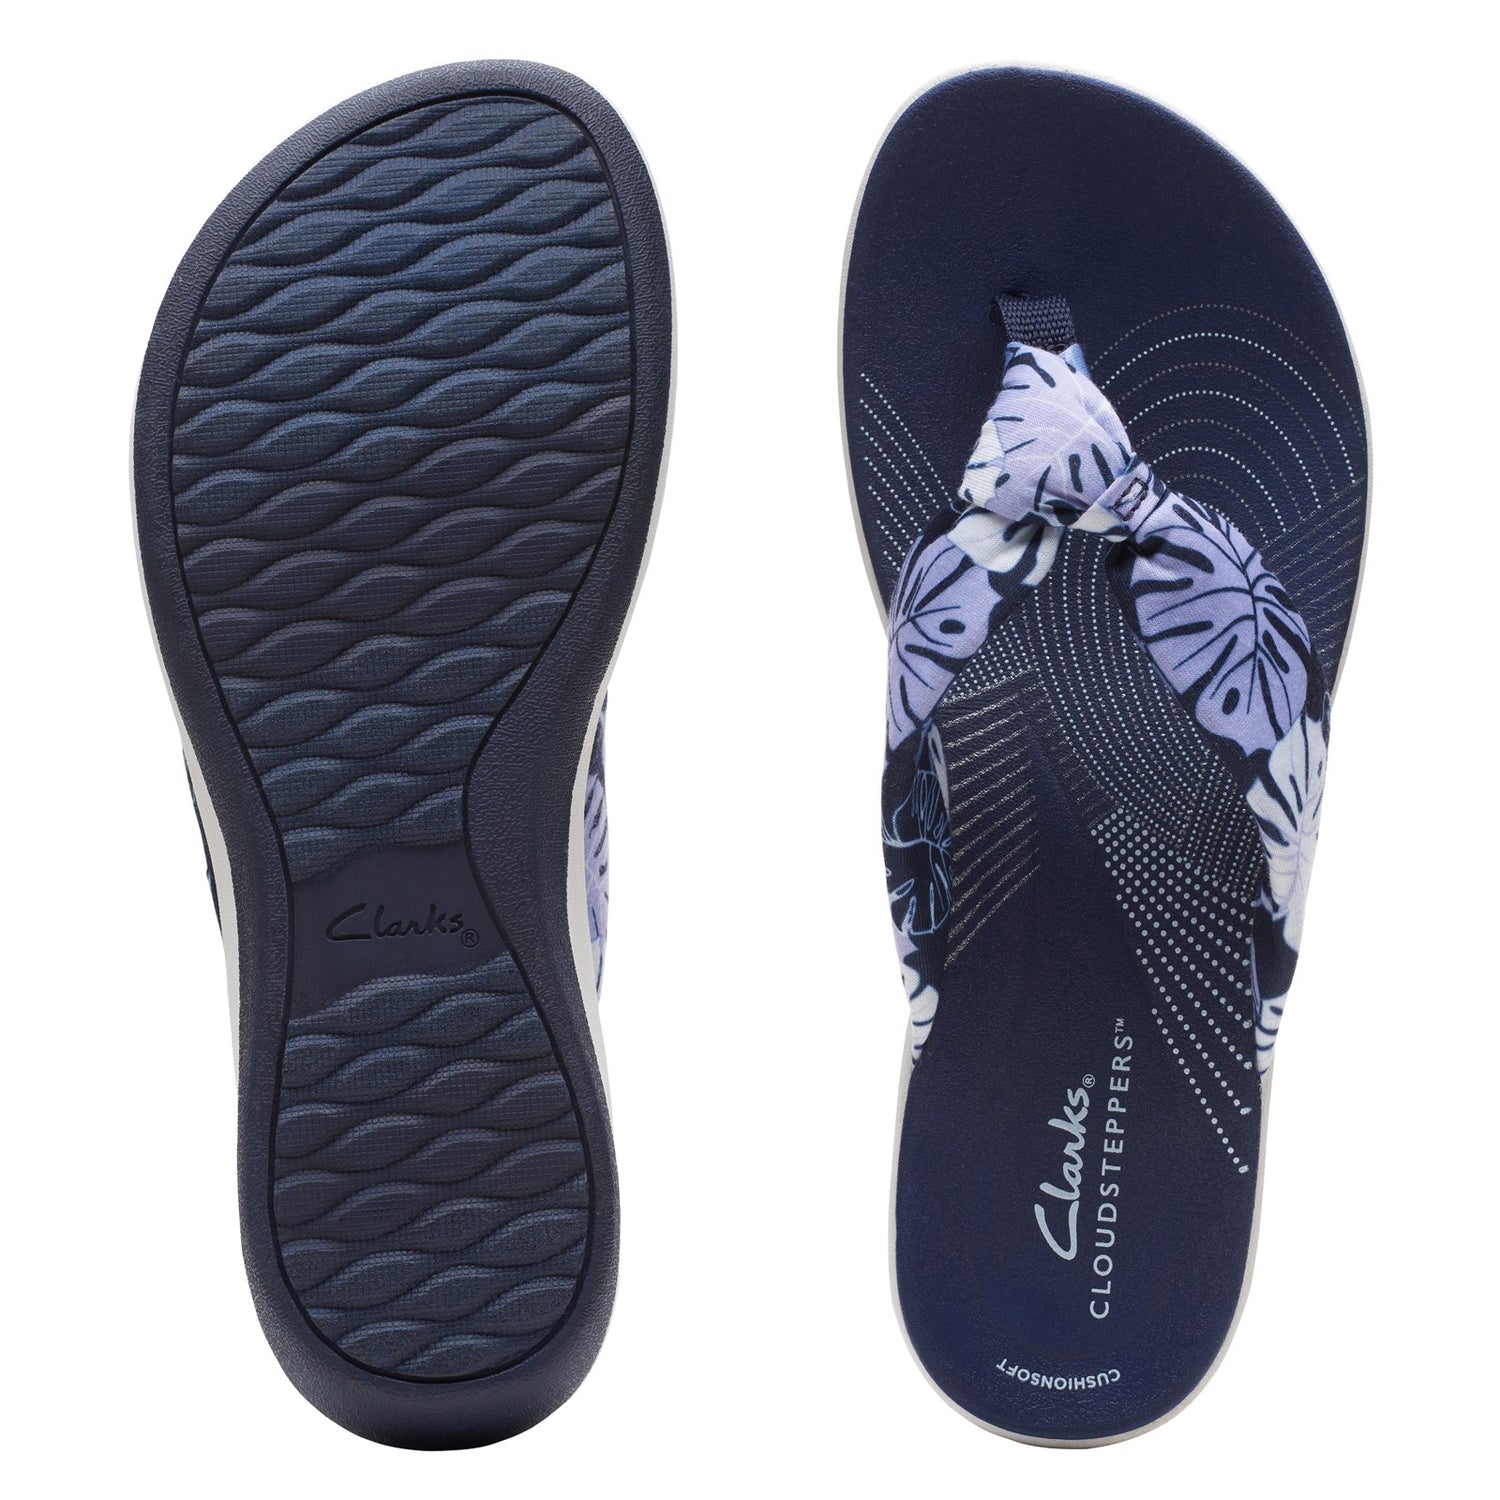 Peltz Shoes  Women's Clarks Arla Glison Sandal BLUE FLORAL 26165049